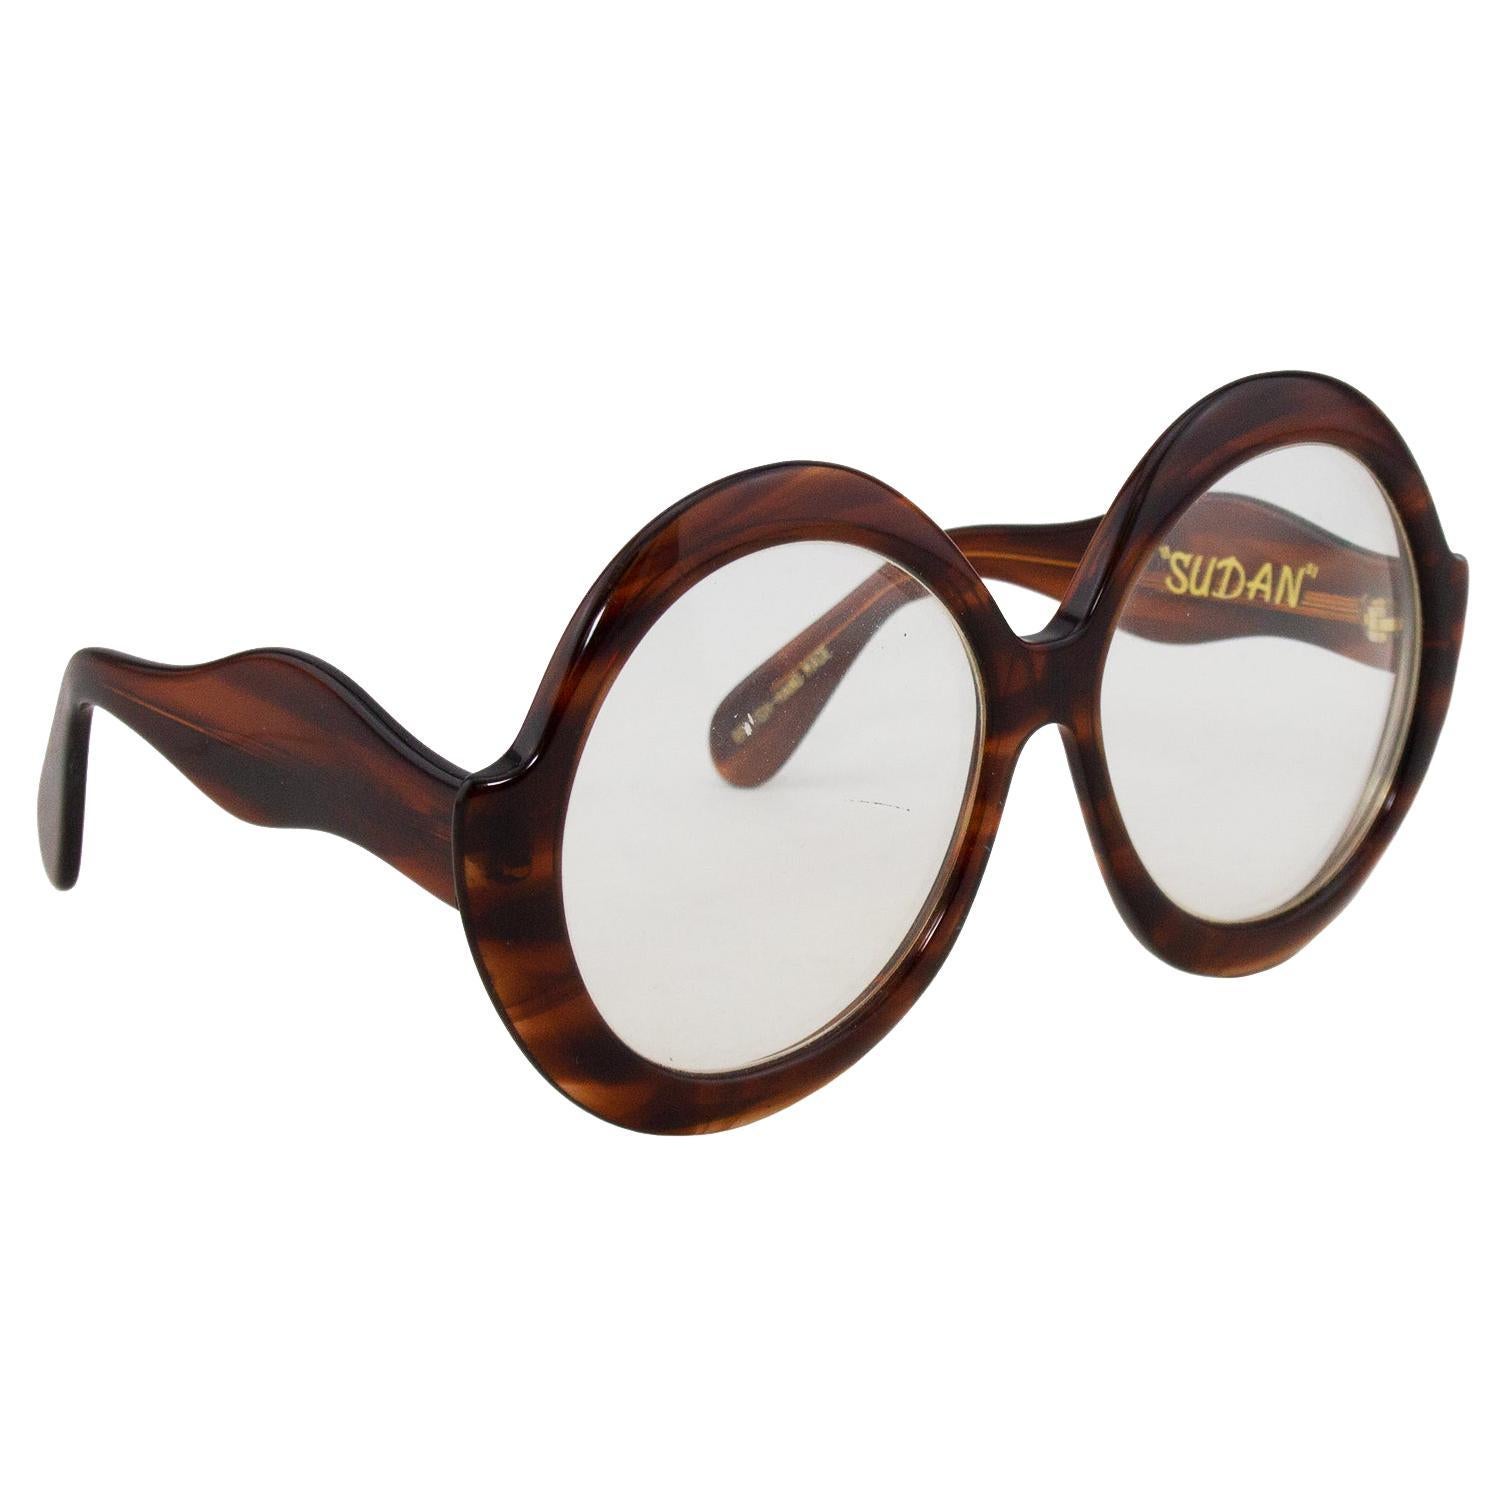 1960s glasses